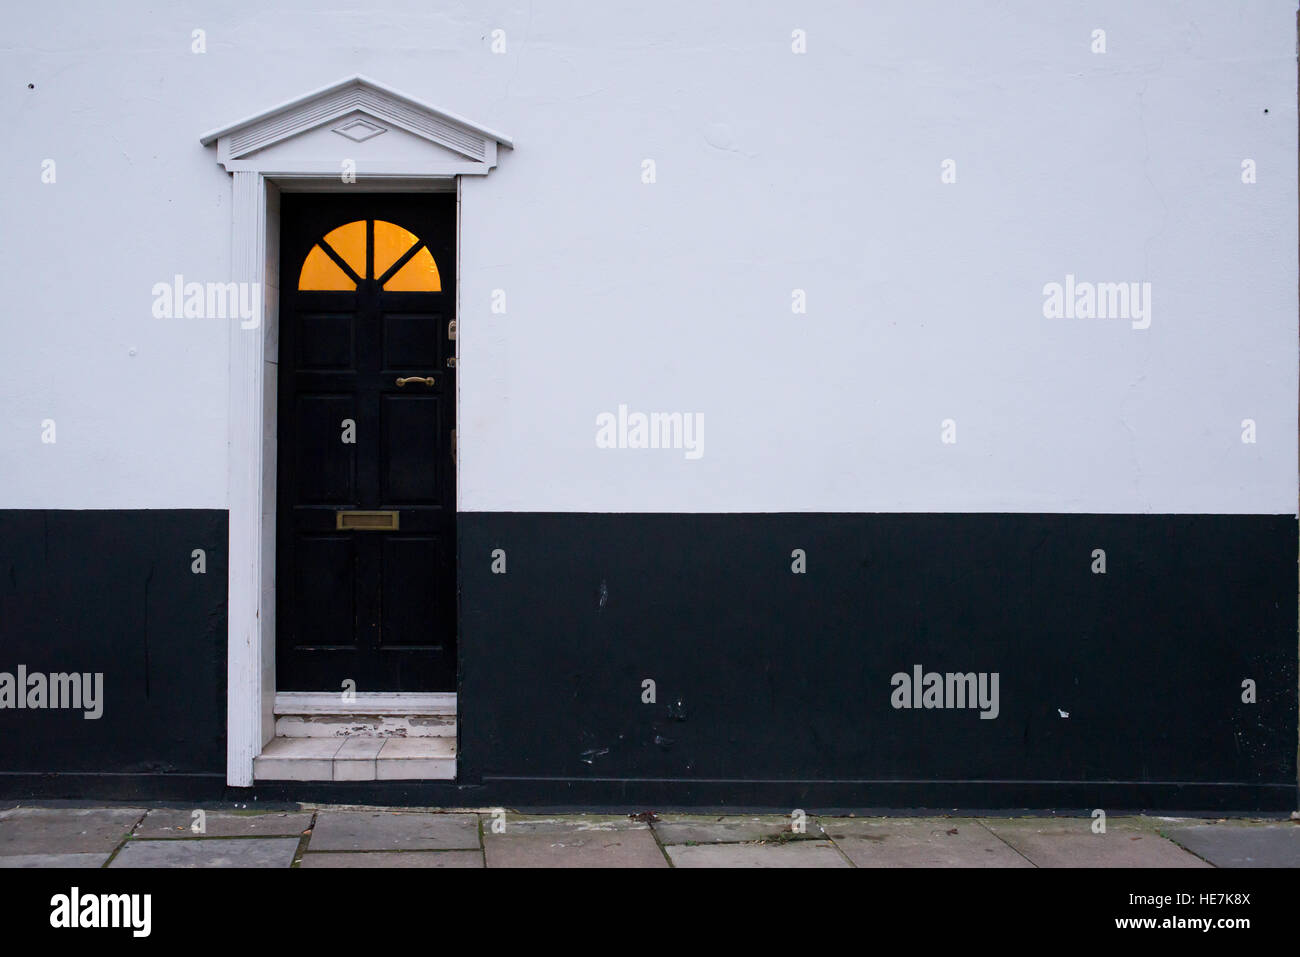 Legno nero porta in stile vittoriano su un bianco e nero parete con pannello di vetro sulla parte superiore e il caldo colore giallo luce proveniente dall'interno Foto Stock